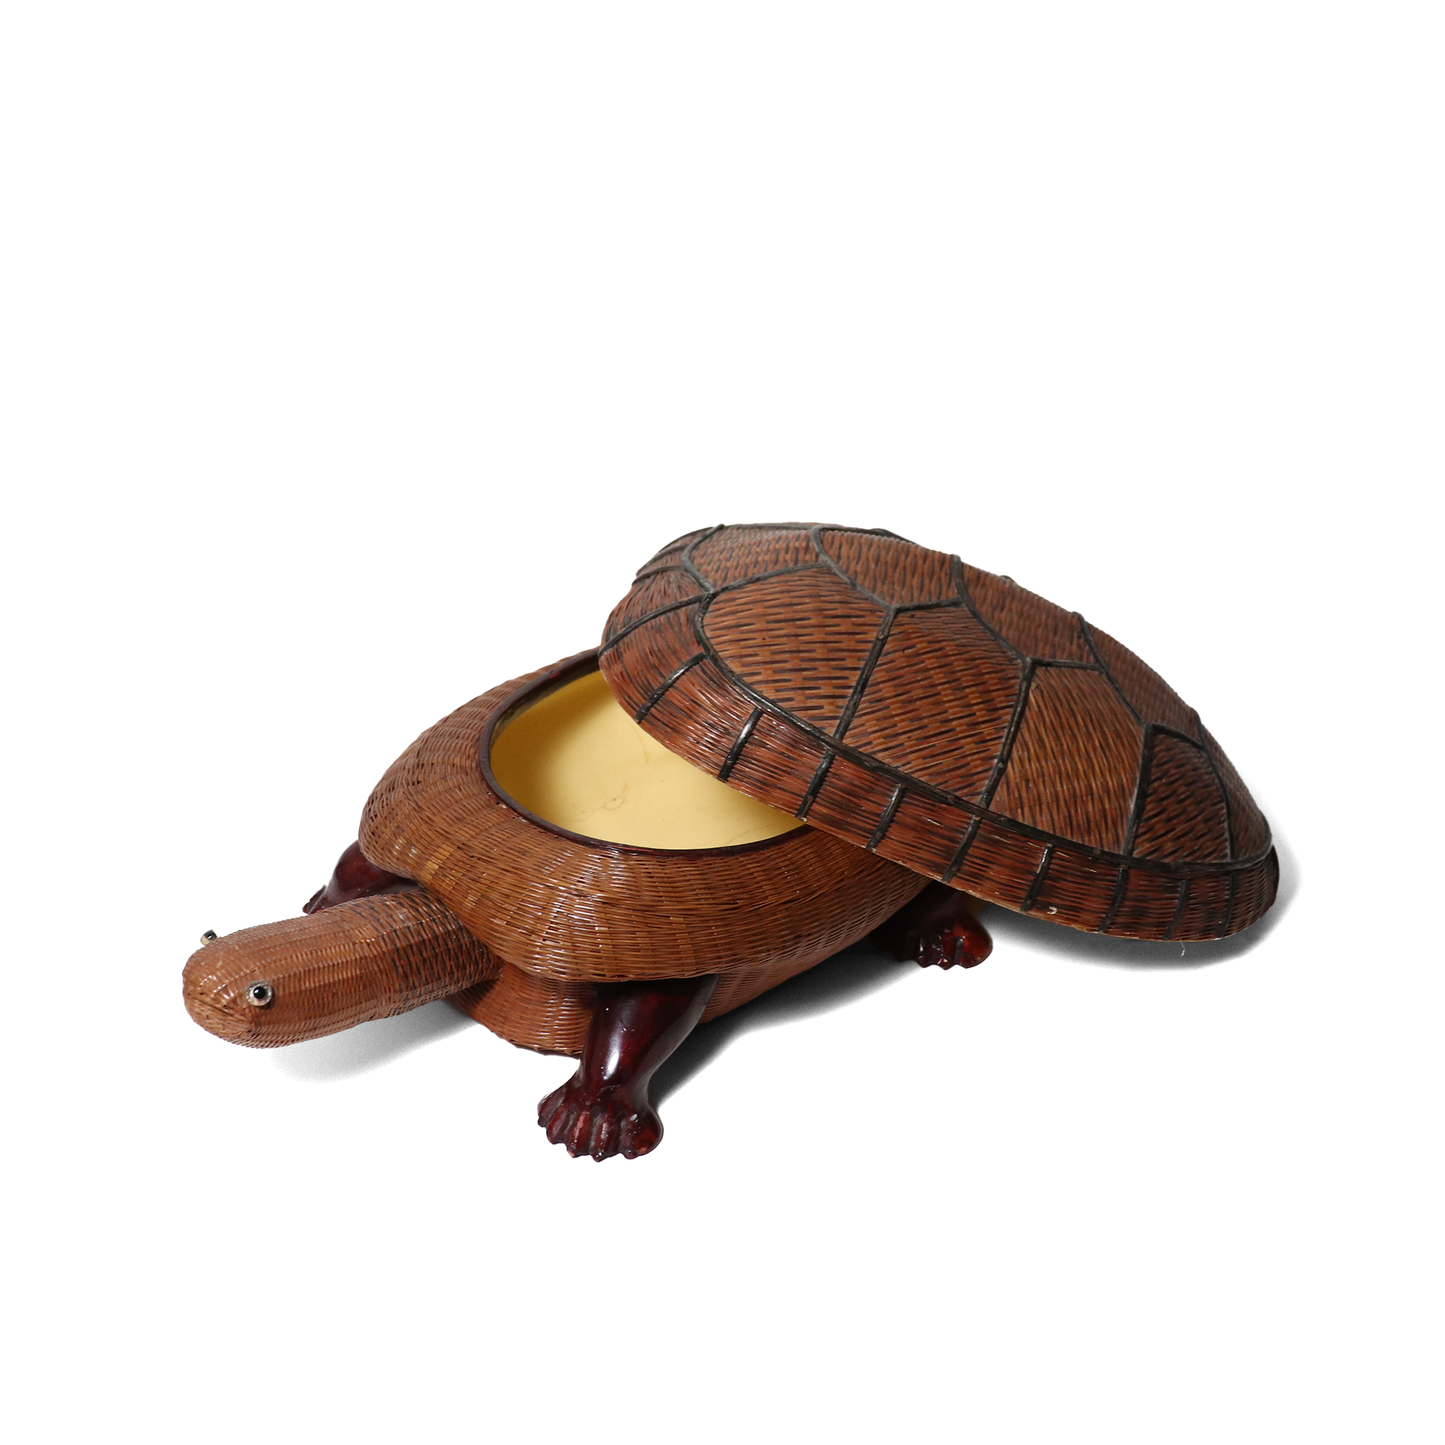 Wicker Tortoise